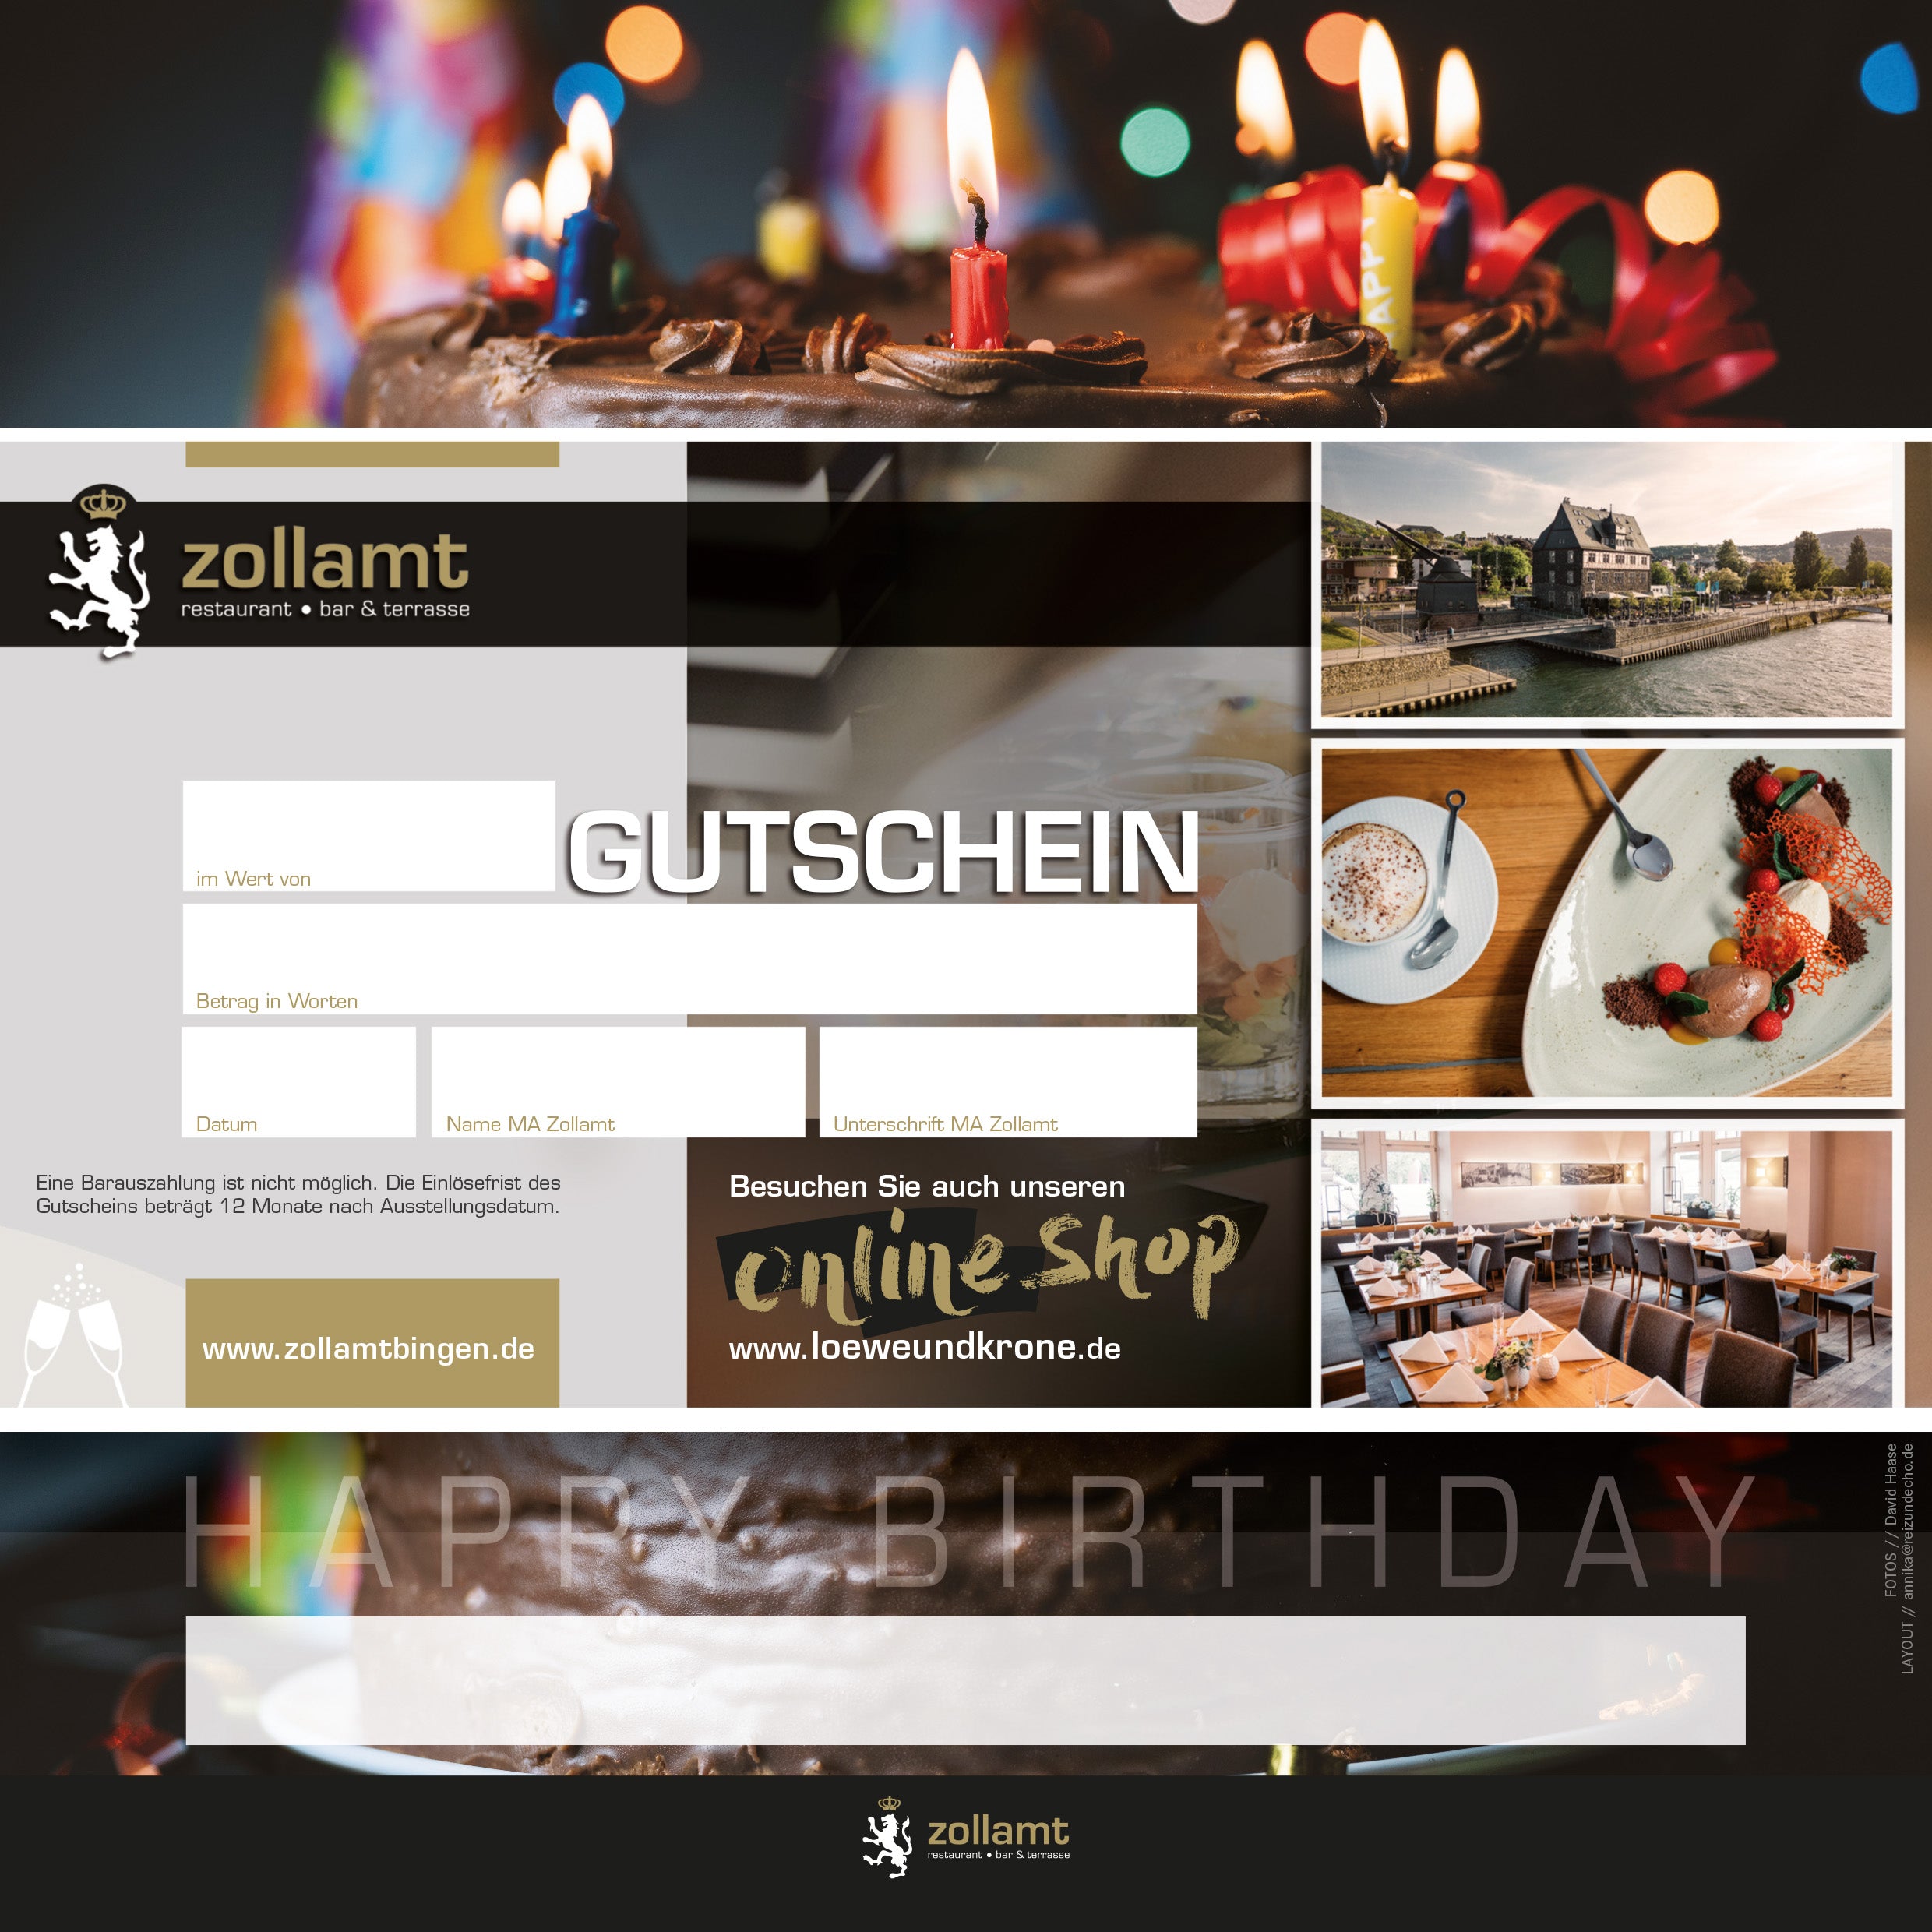 Geburtstag - Zollamt Restaurant Gutschein